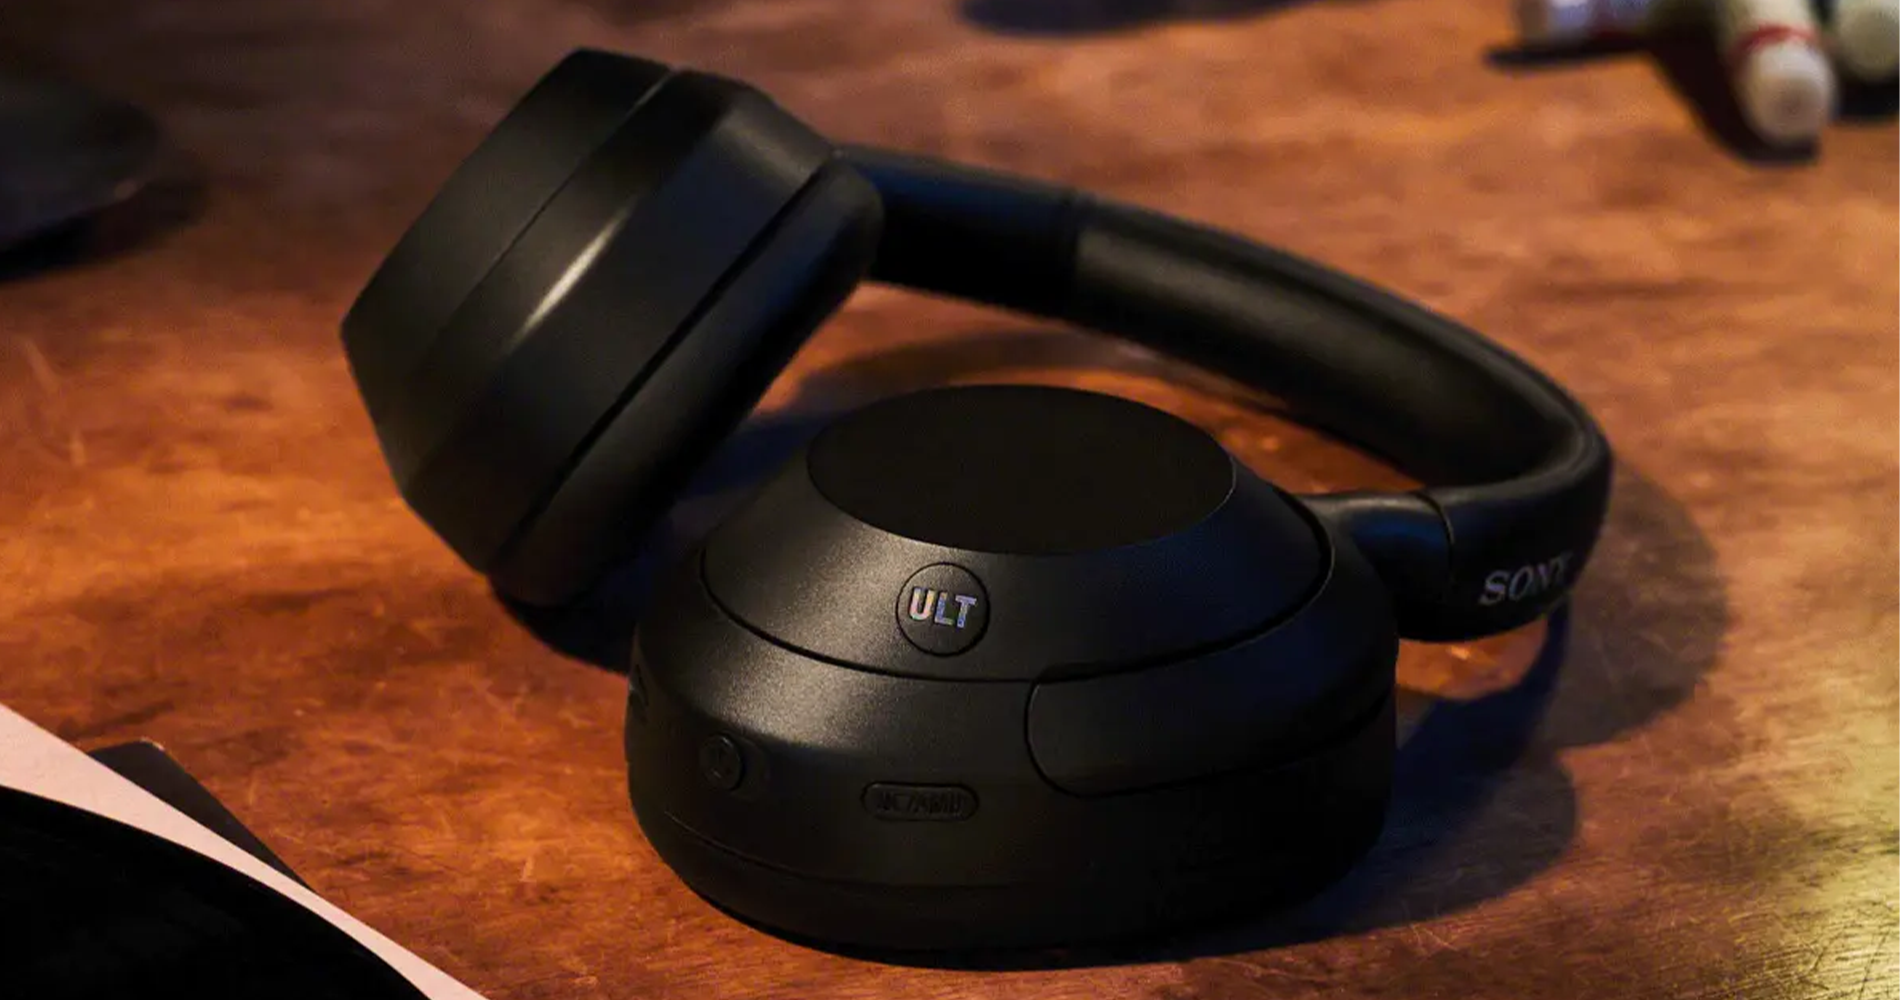 Sony ULT WEAR Wireless Noise Canceling Headphones Overview